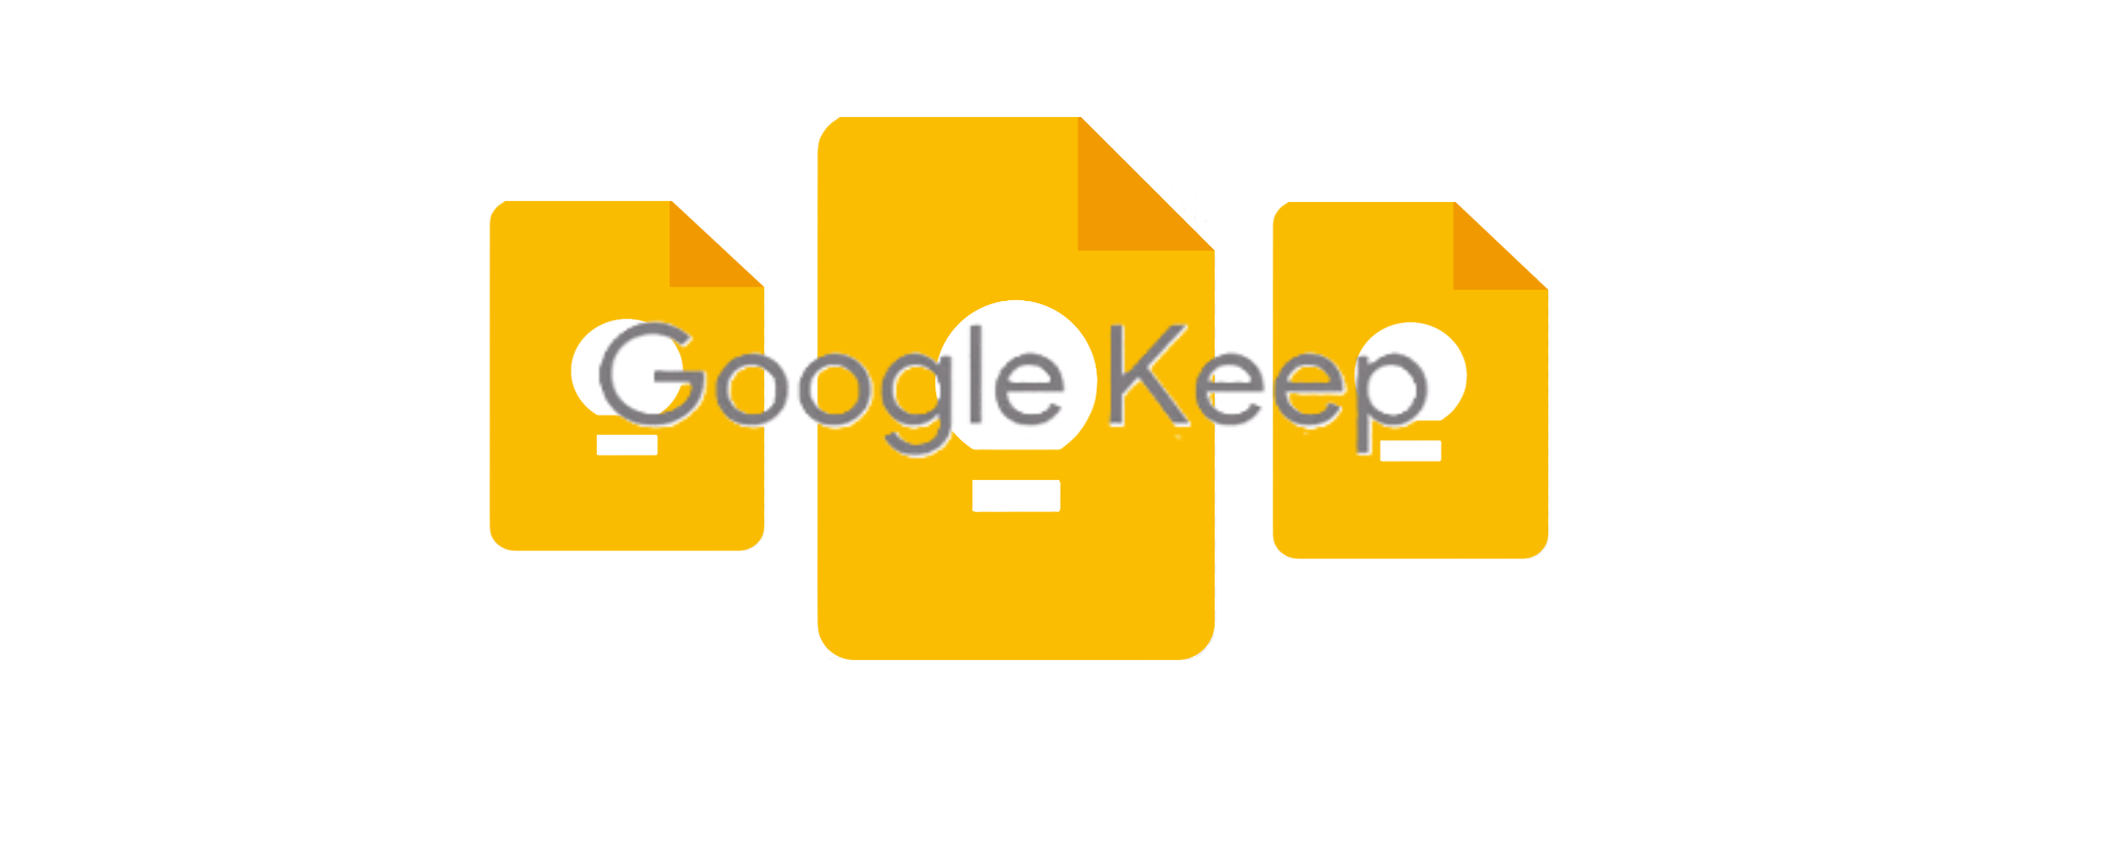 Come organizzare al meglio Google Keep